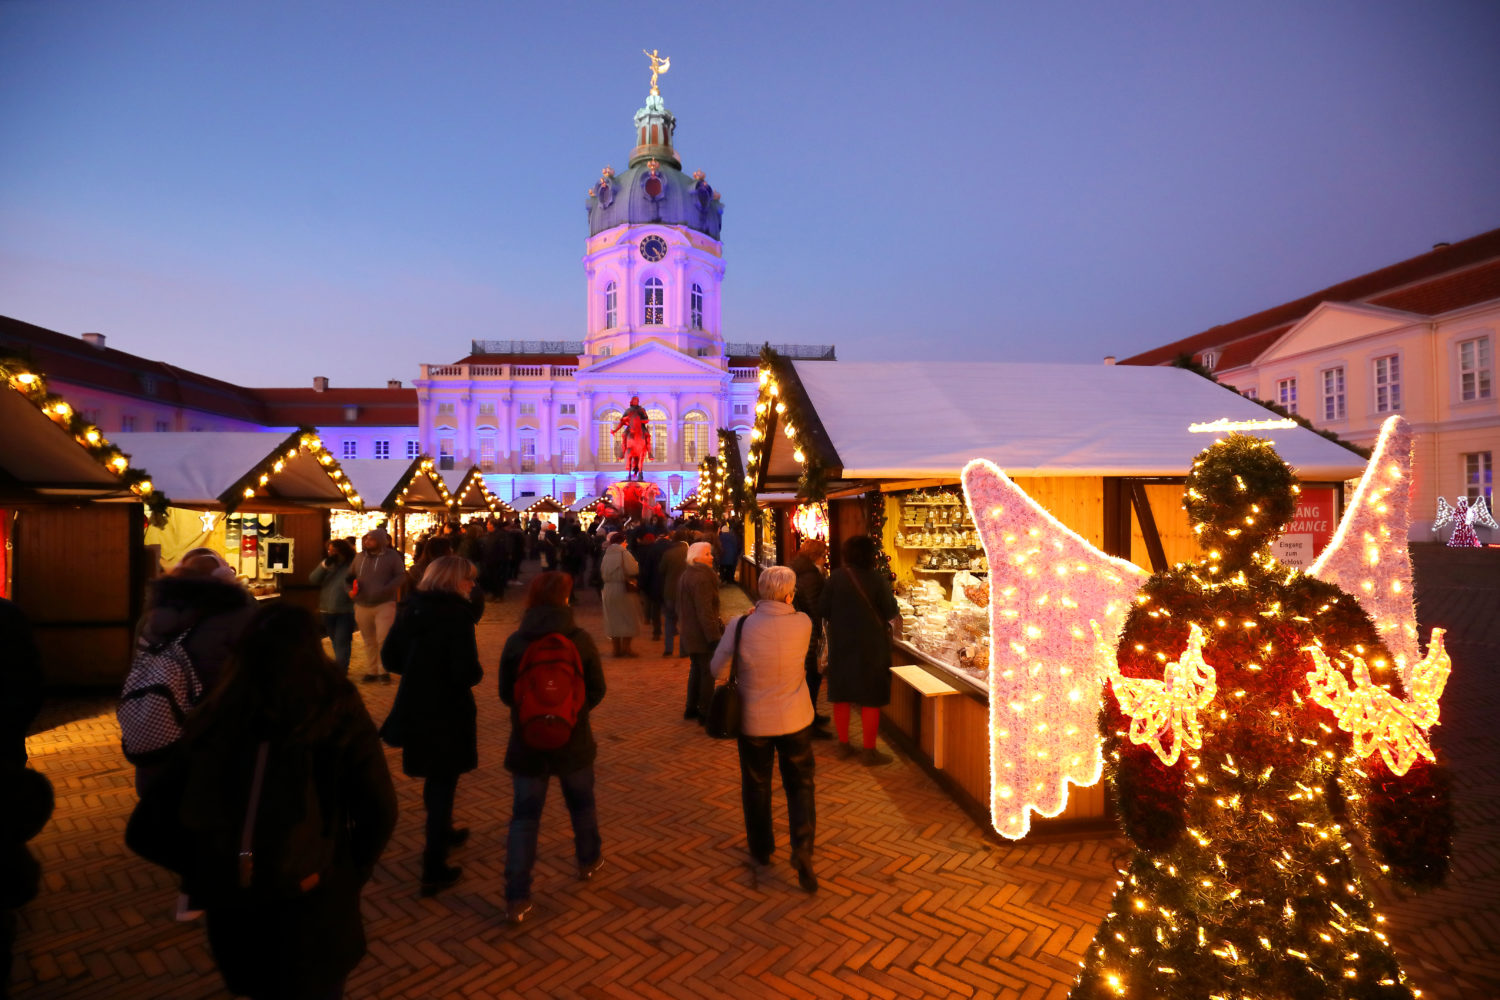 weihnachtsmarkt charlottenburg 2020 findet vor dem Schloss Charlottenburg kein Weihnachtsmarkt statt – trotz Hygienekonzept.